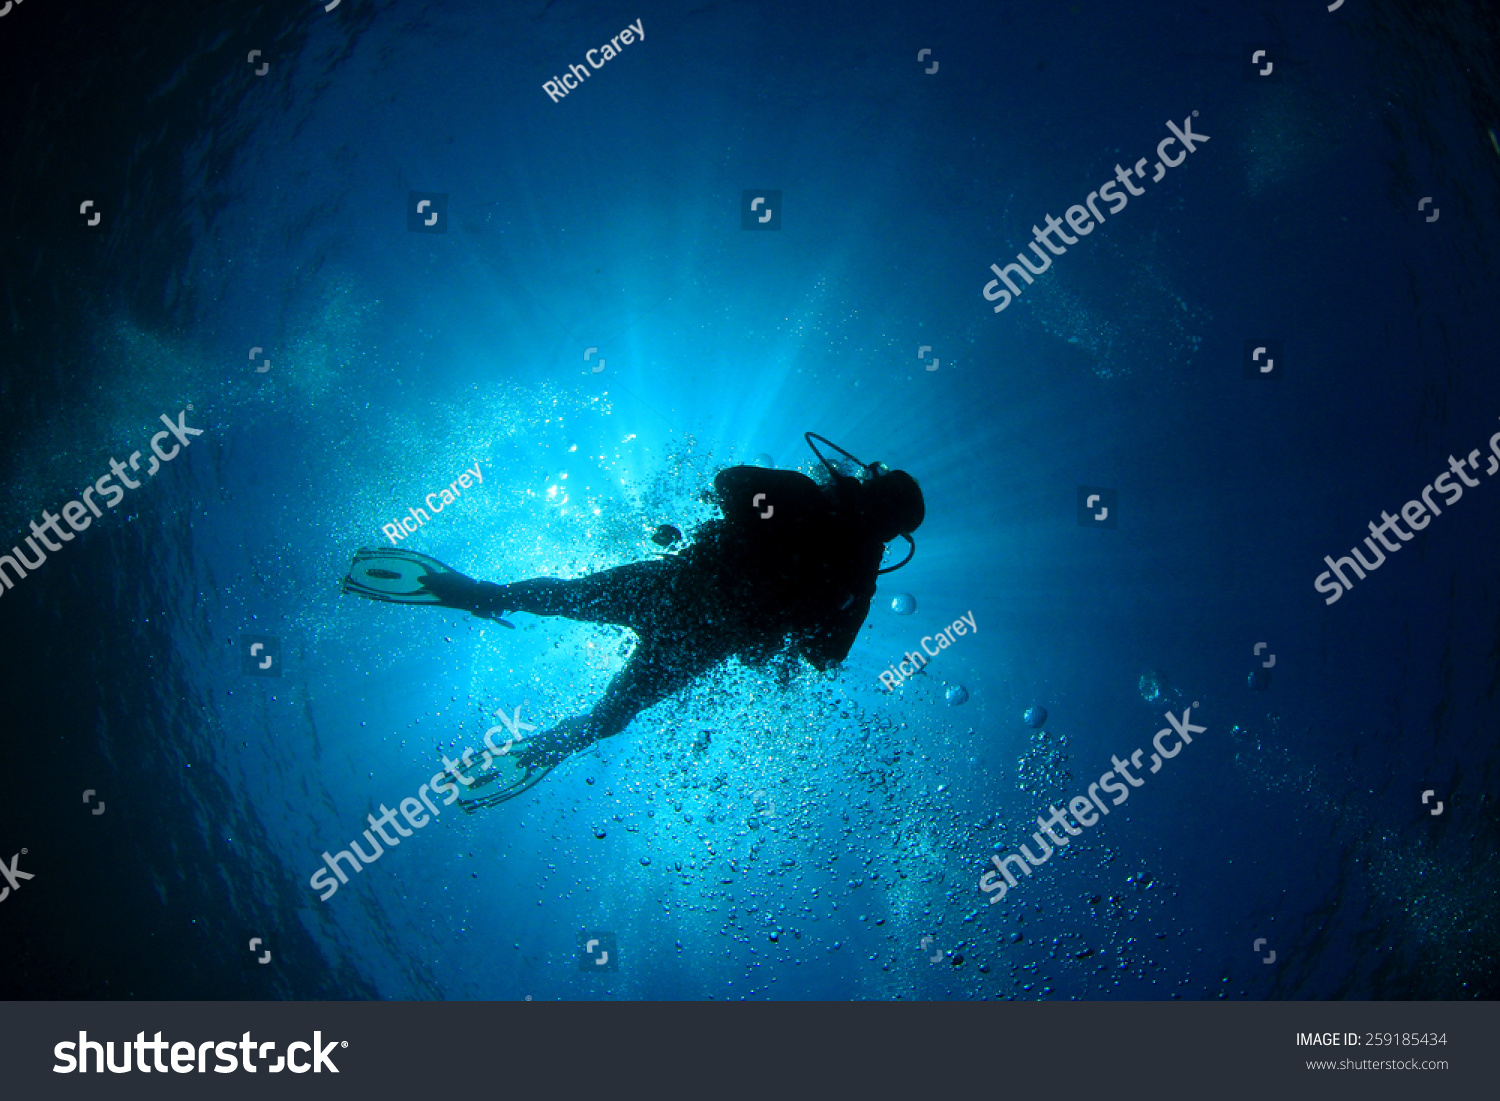 Scuba diver silhouette and sun #259185434